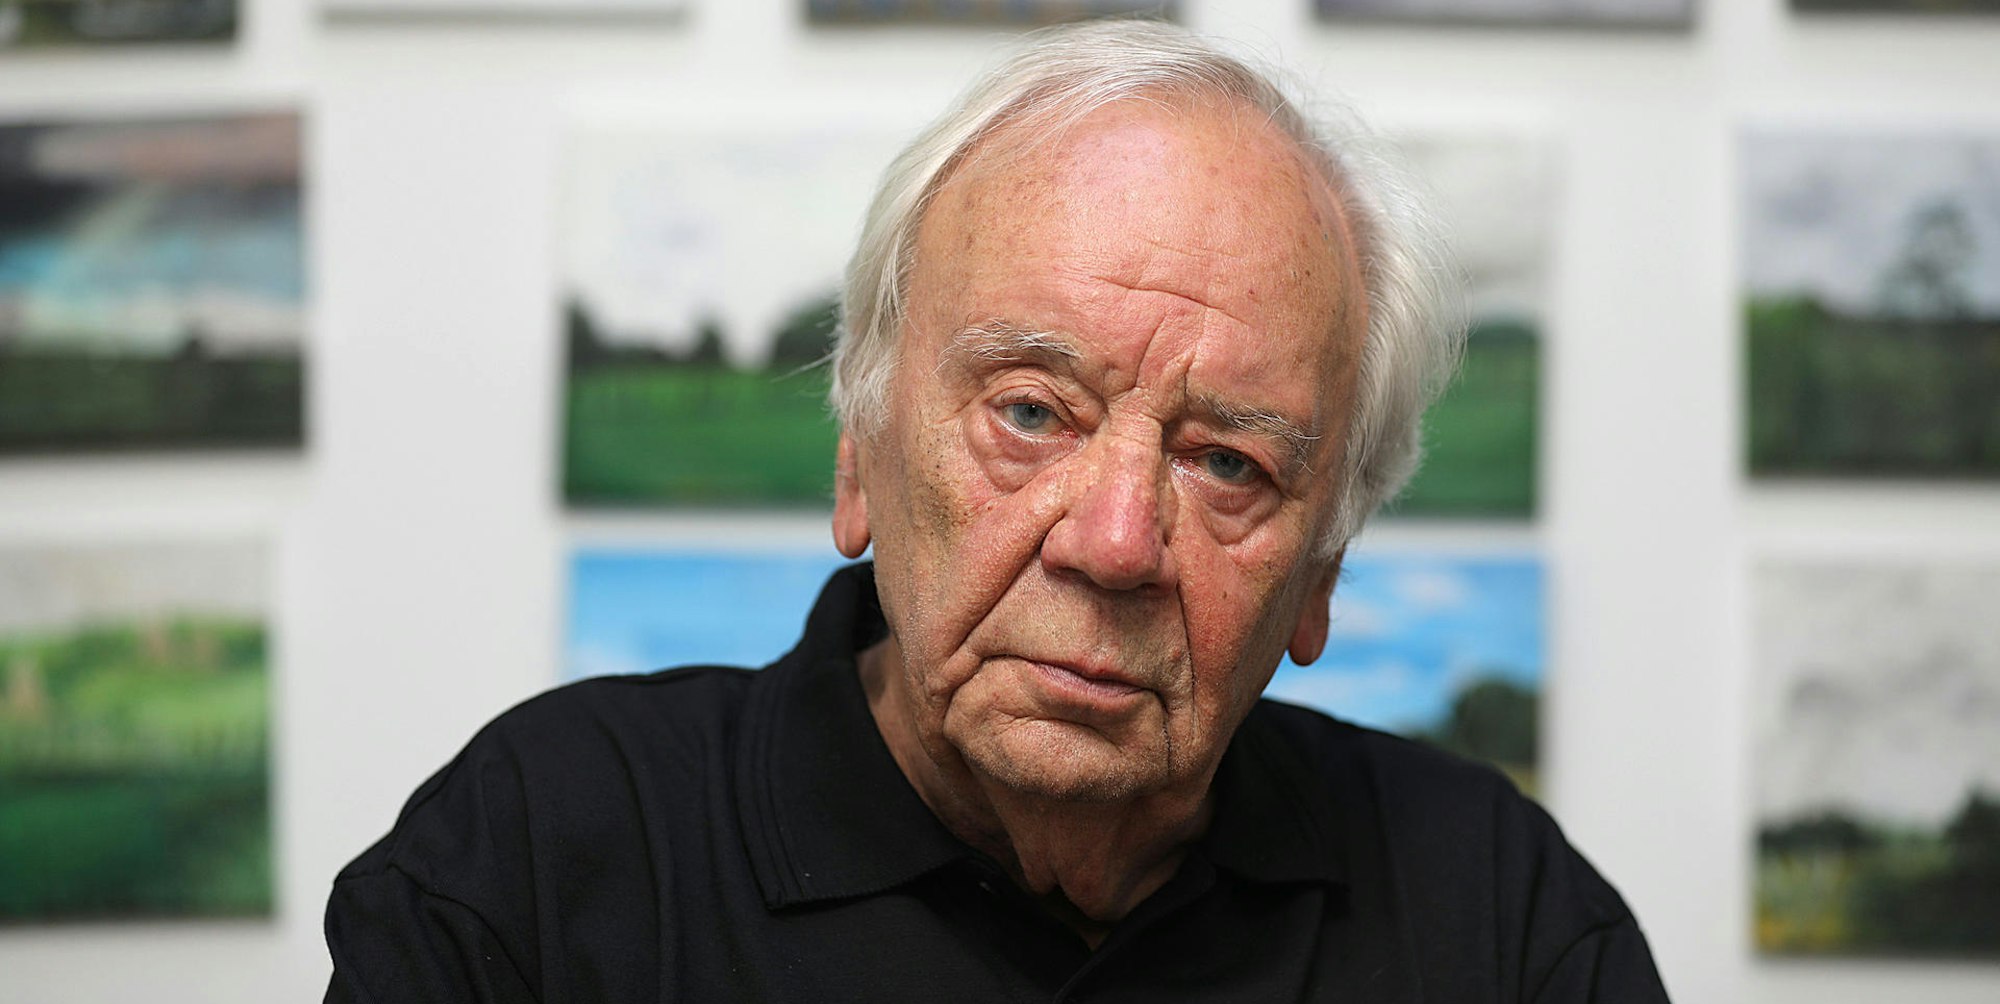 Viele Interviews gab Georg-Büchner-Preisträger Jürgen Becker im Vorfeld seines 90. Geburtstags.